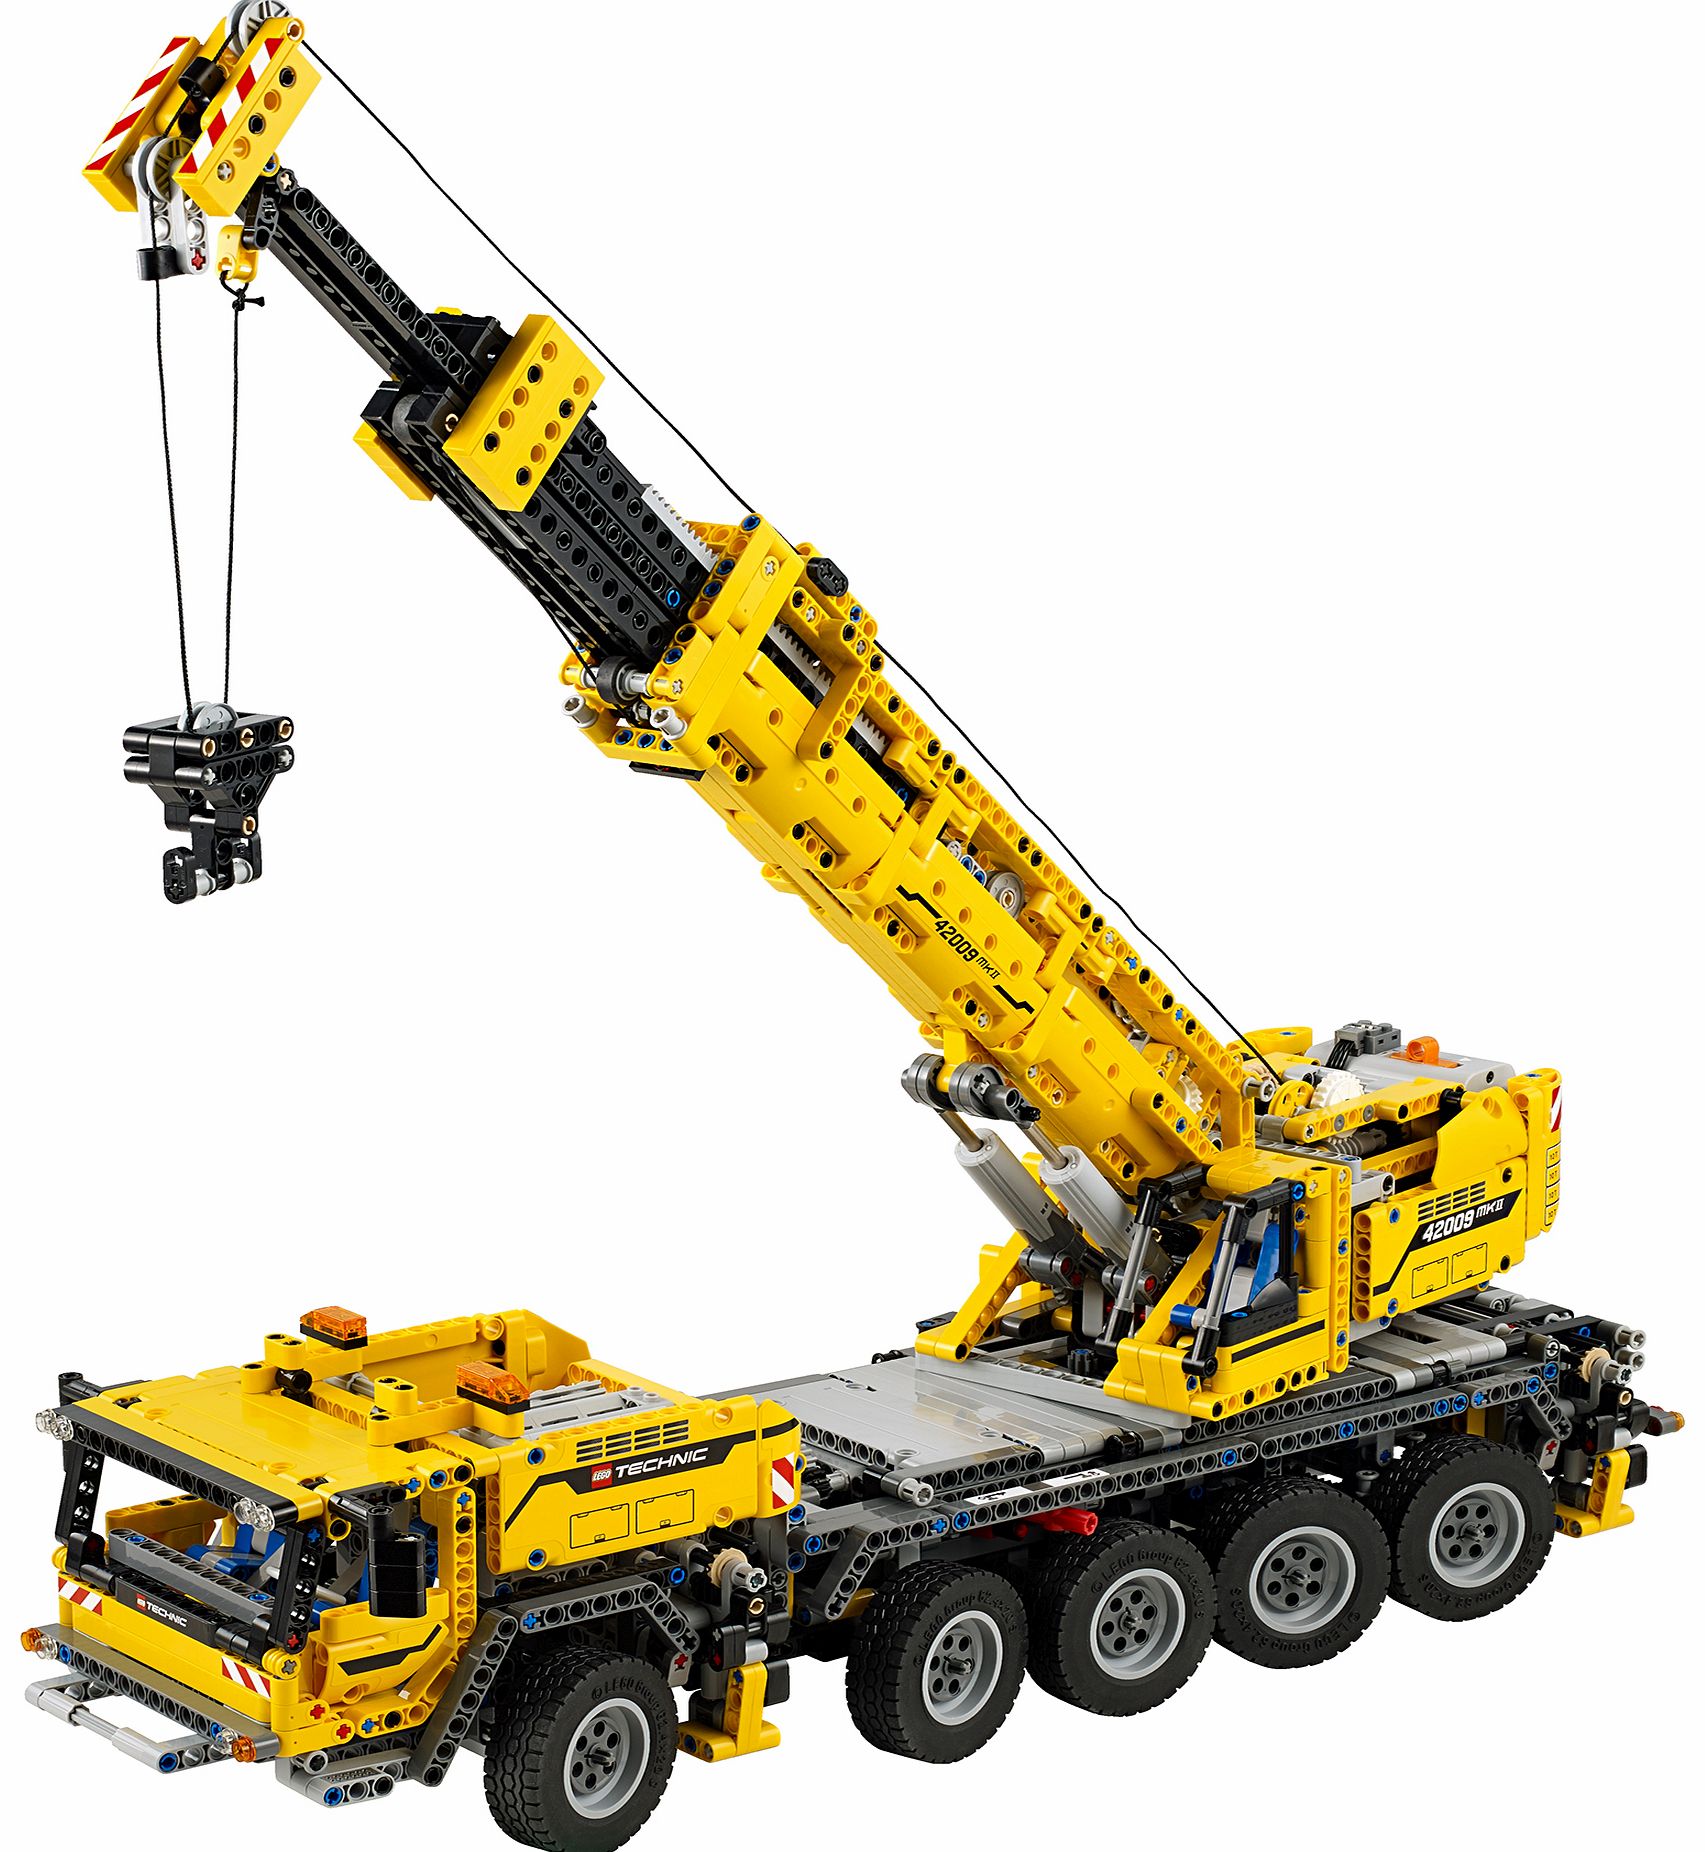 Lego Technic Mobile Crane MK II 42009